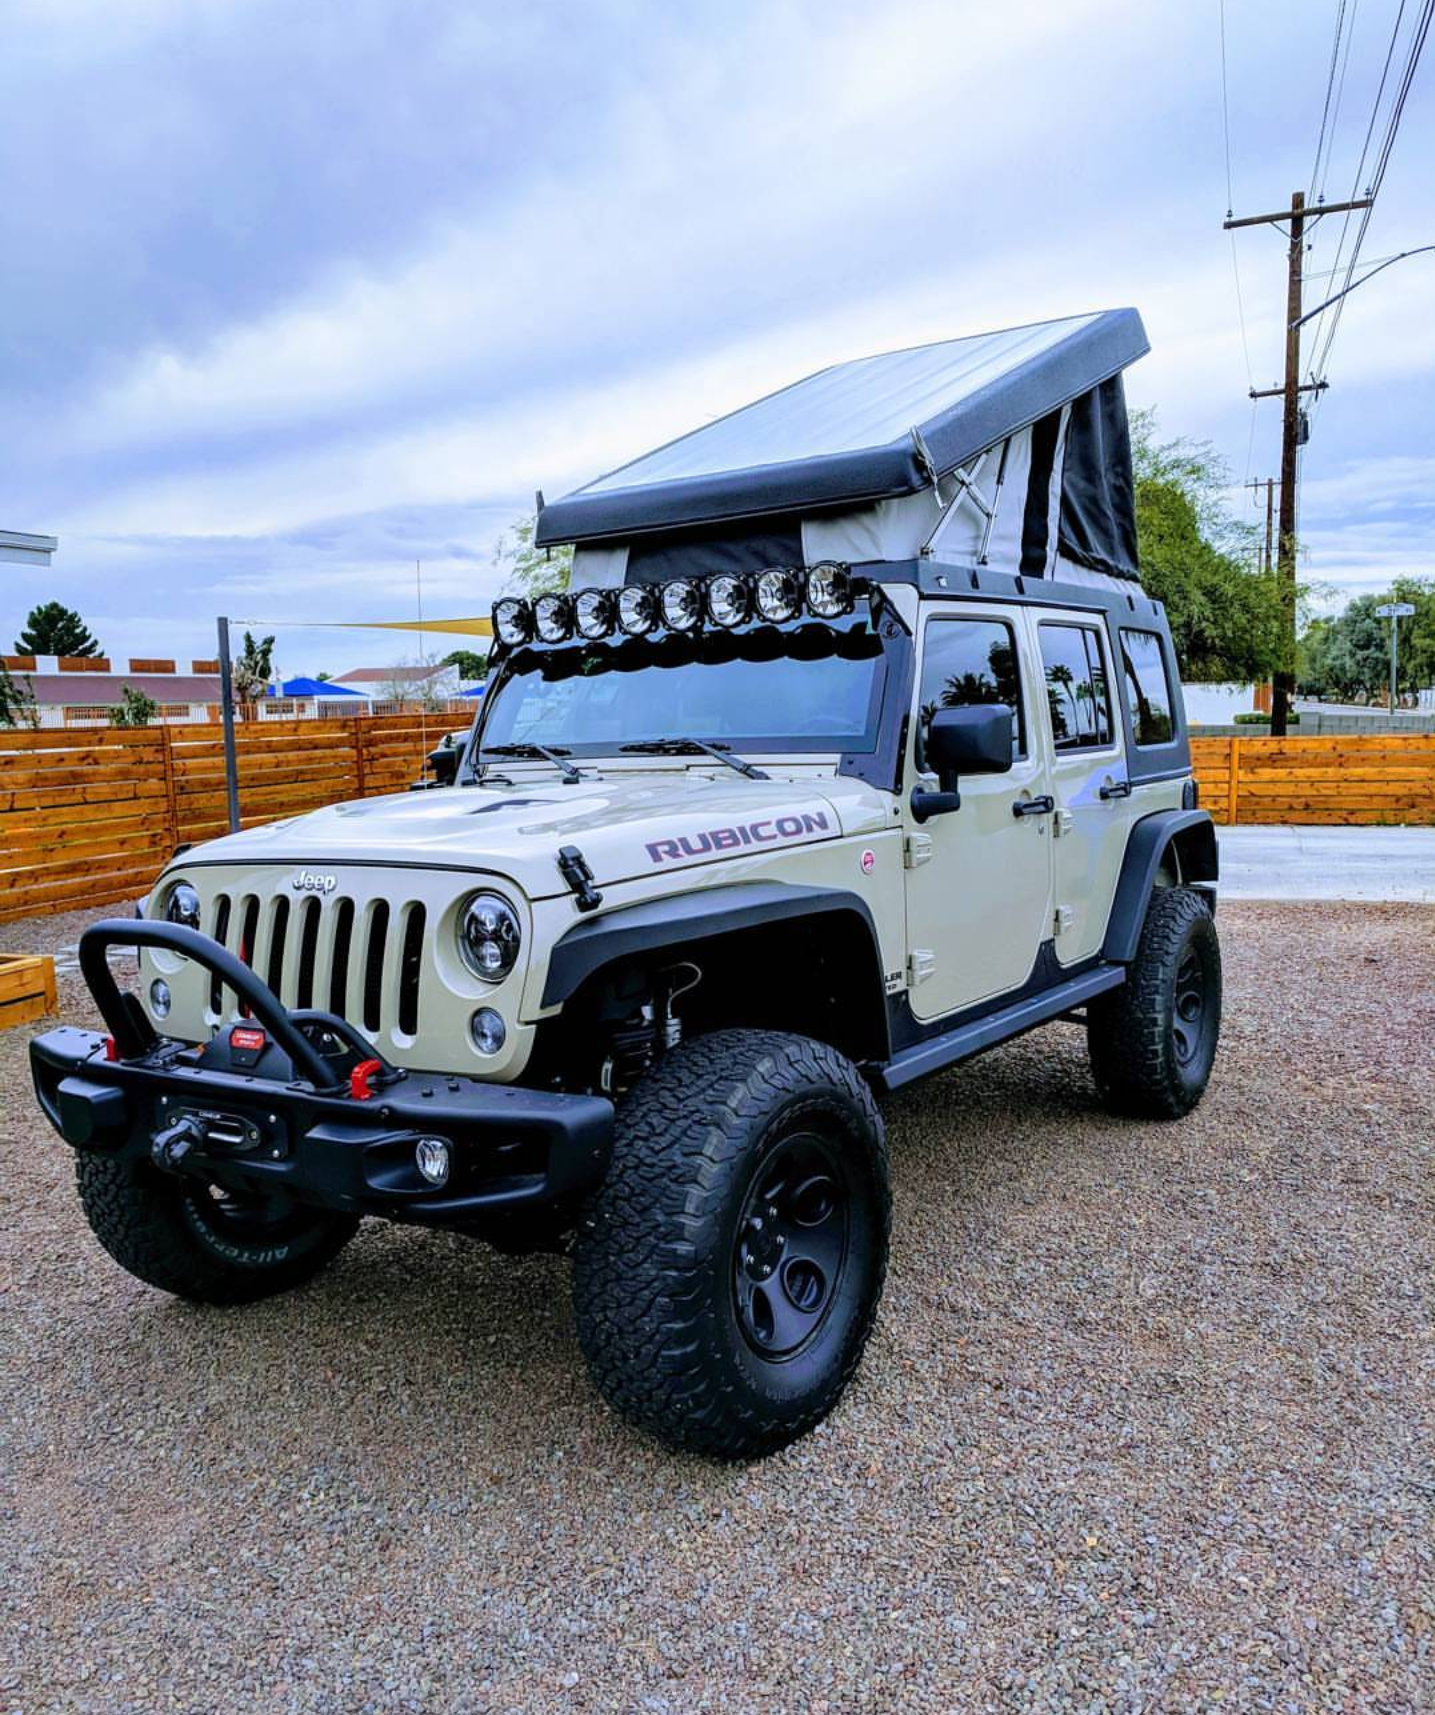 Jeep Wrangler JK Ursa Minor Roof Top Tent / Camper Top for Sale in Davis,  CA - OfferUp